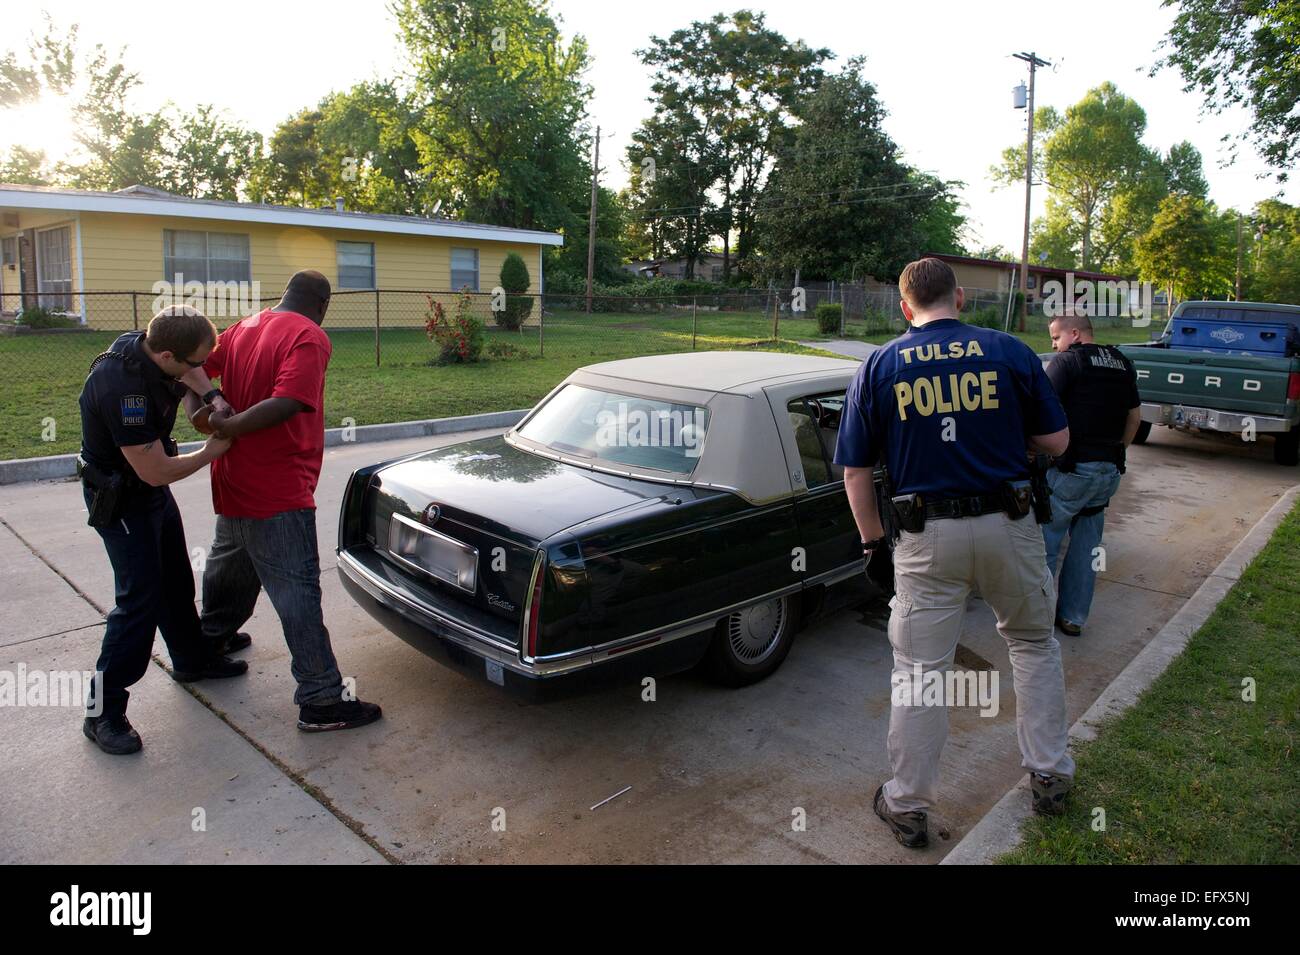 Noi Marescialli agenti di servizio e il Tulsa poliziotti arrestare un sospetto membro della gang durante il funzionamento del fascio triplo II a due settimane di repressione contro le gang violente Maggio 2, 2011 in Tulsa, Oklahoma. Foto Stock